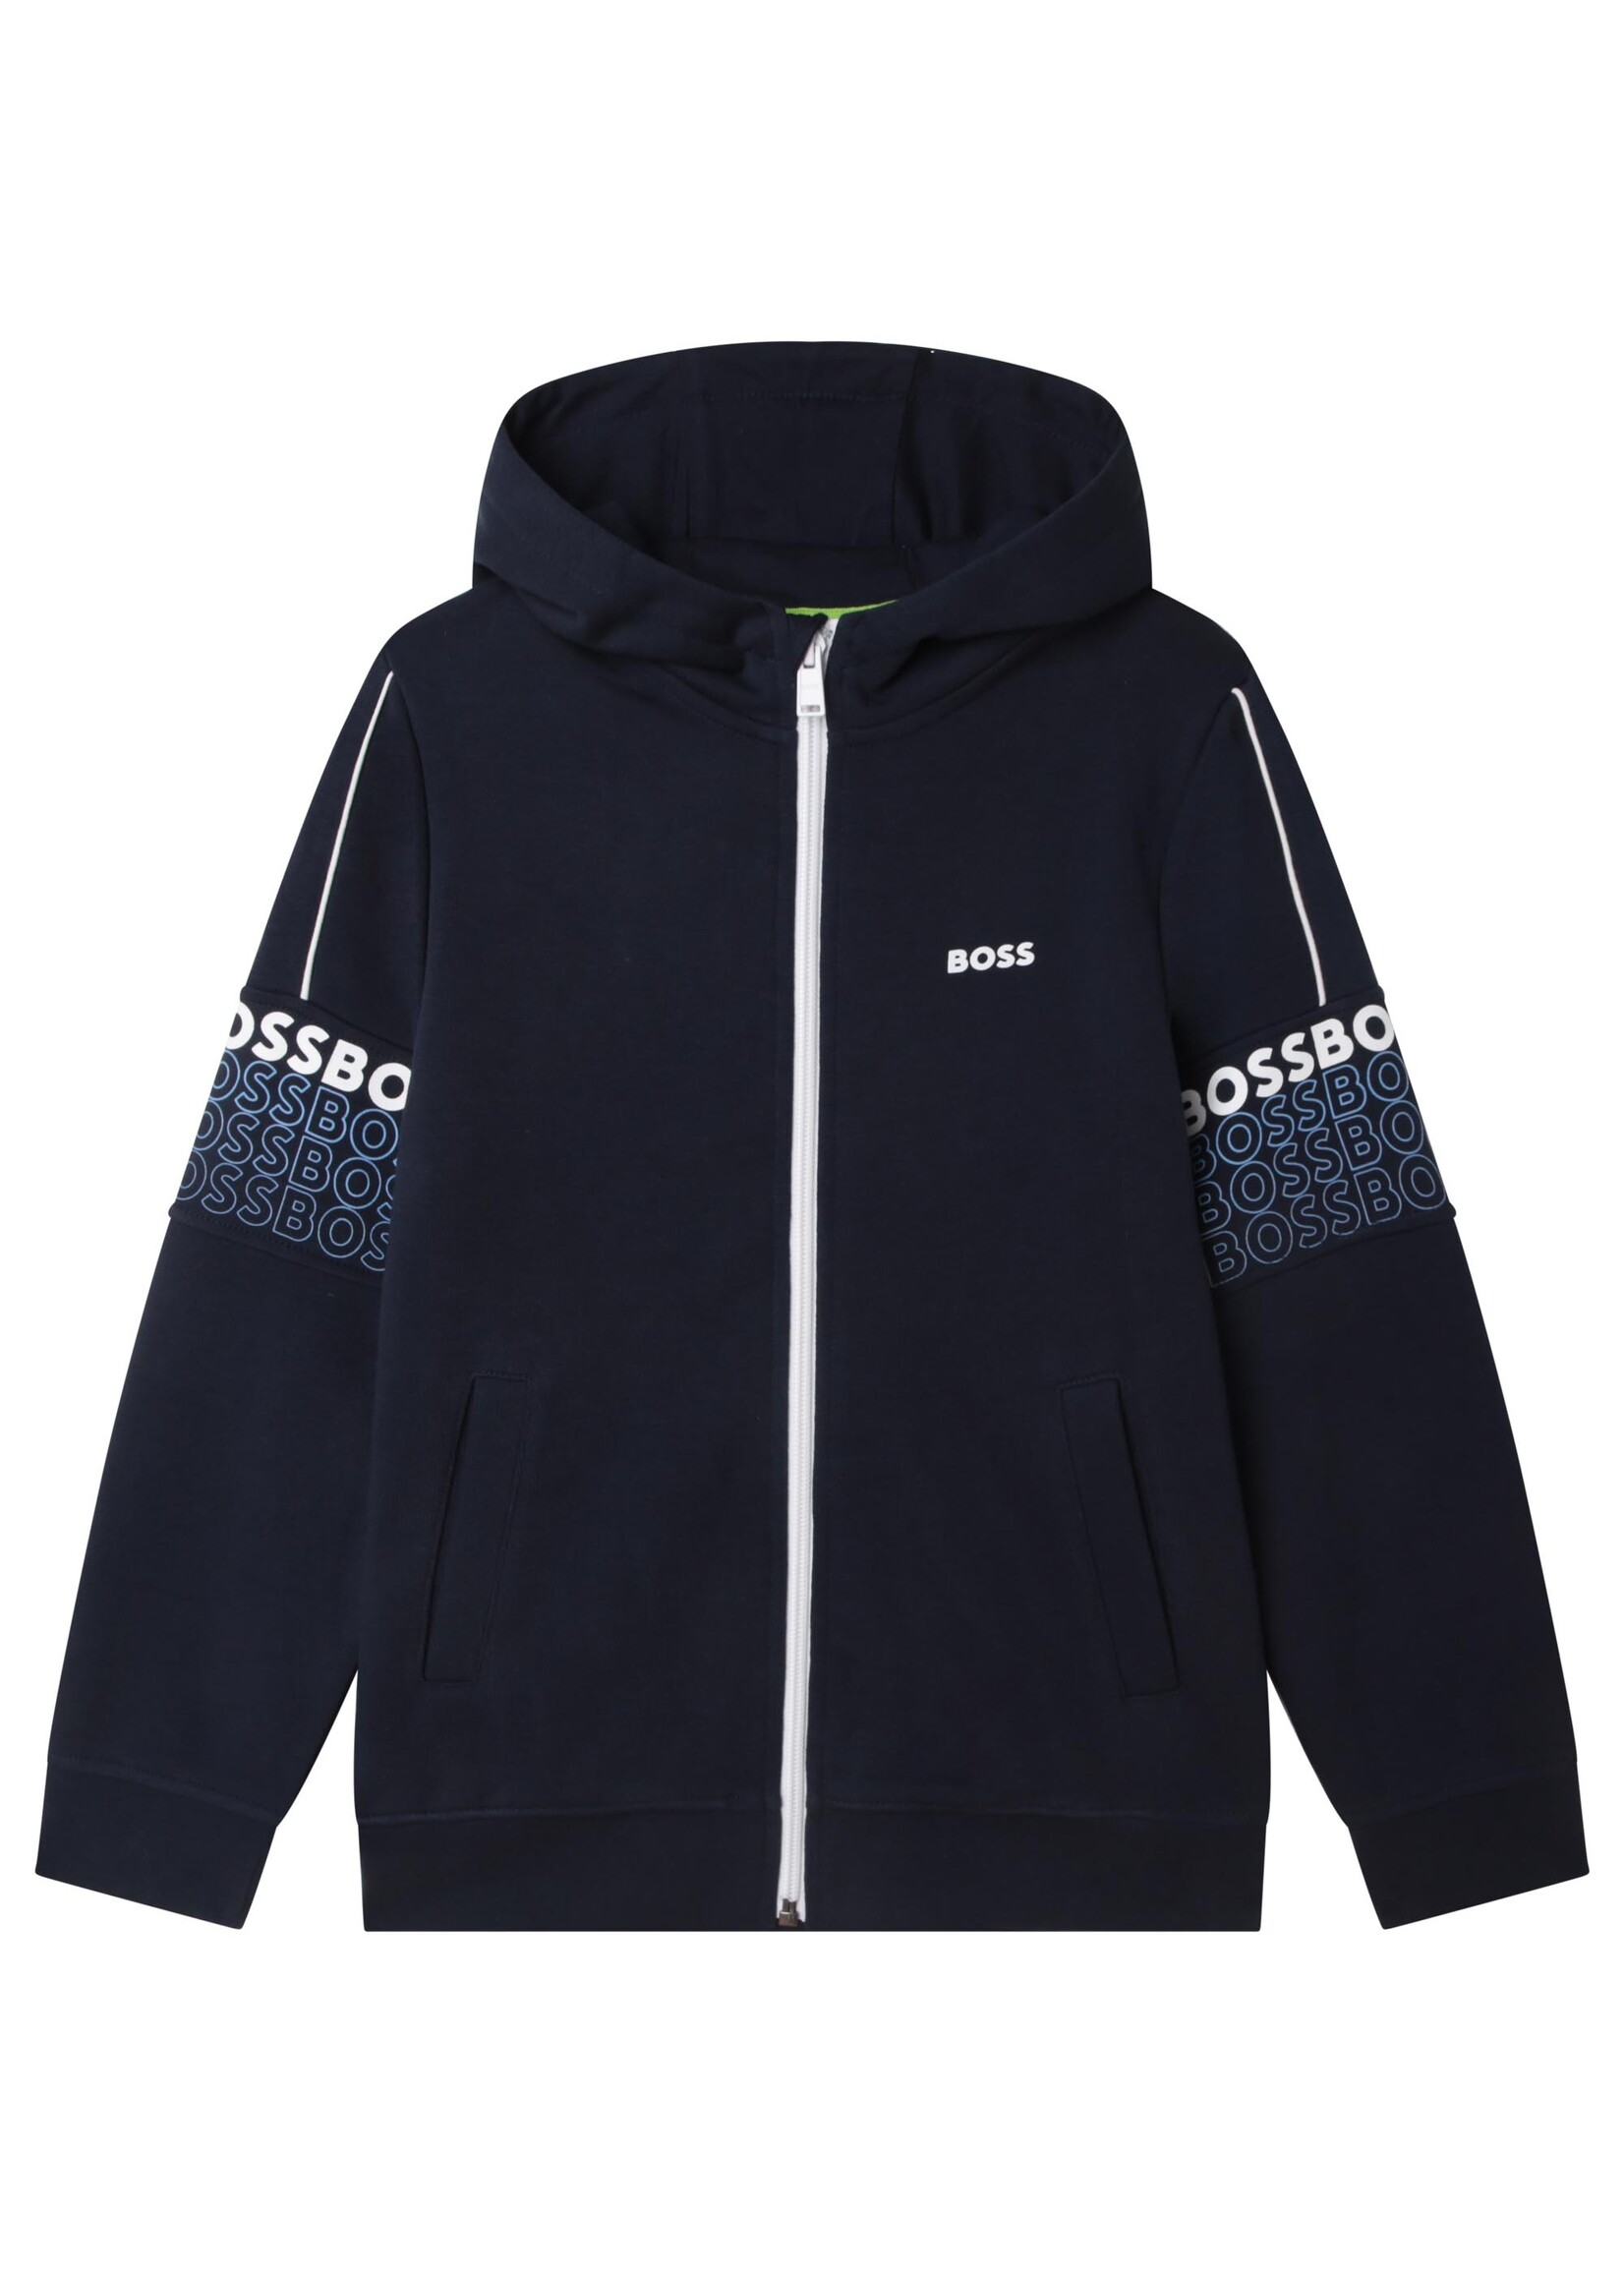 BOSS BOSS set zip hoodie/jogging shorts navy blue - J28113